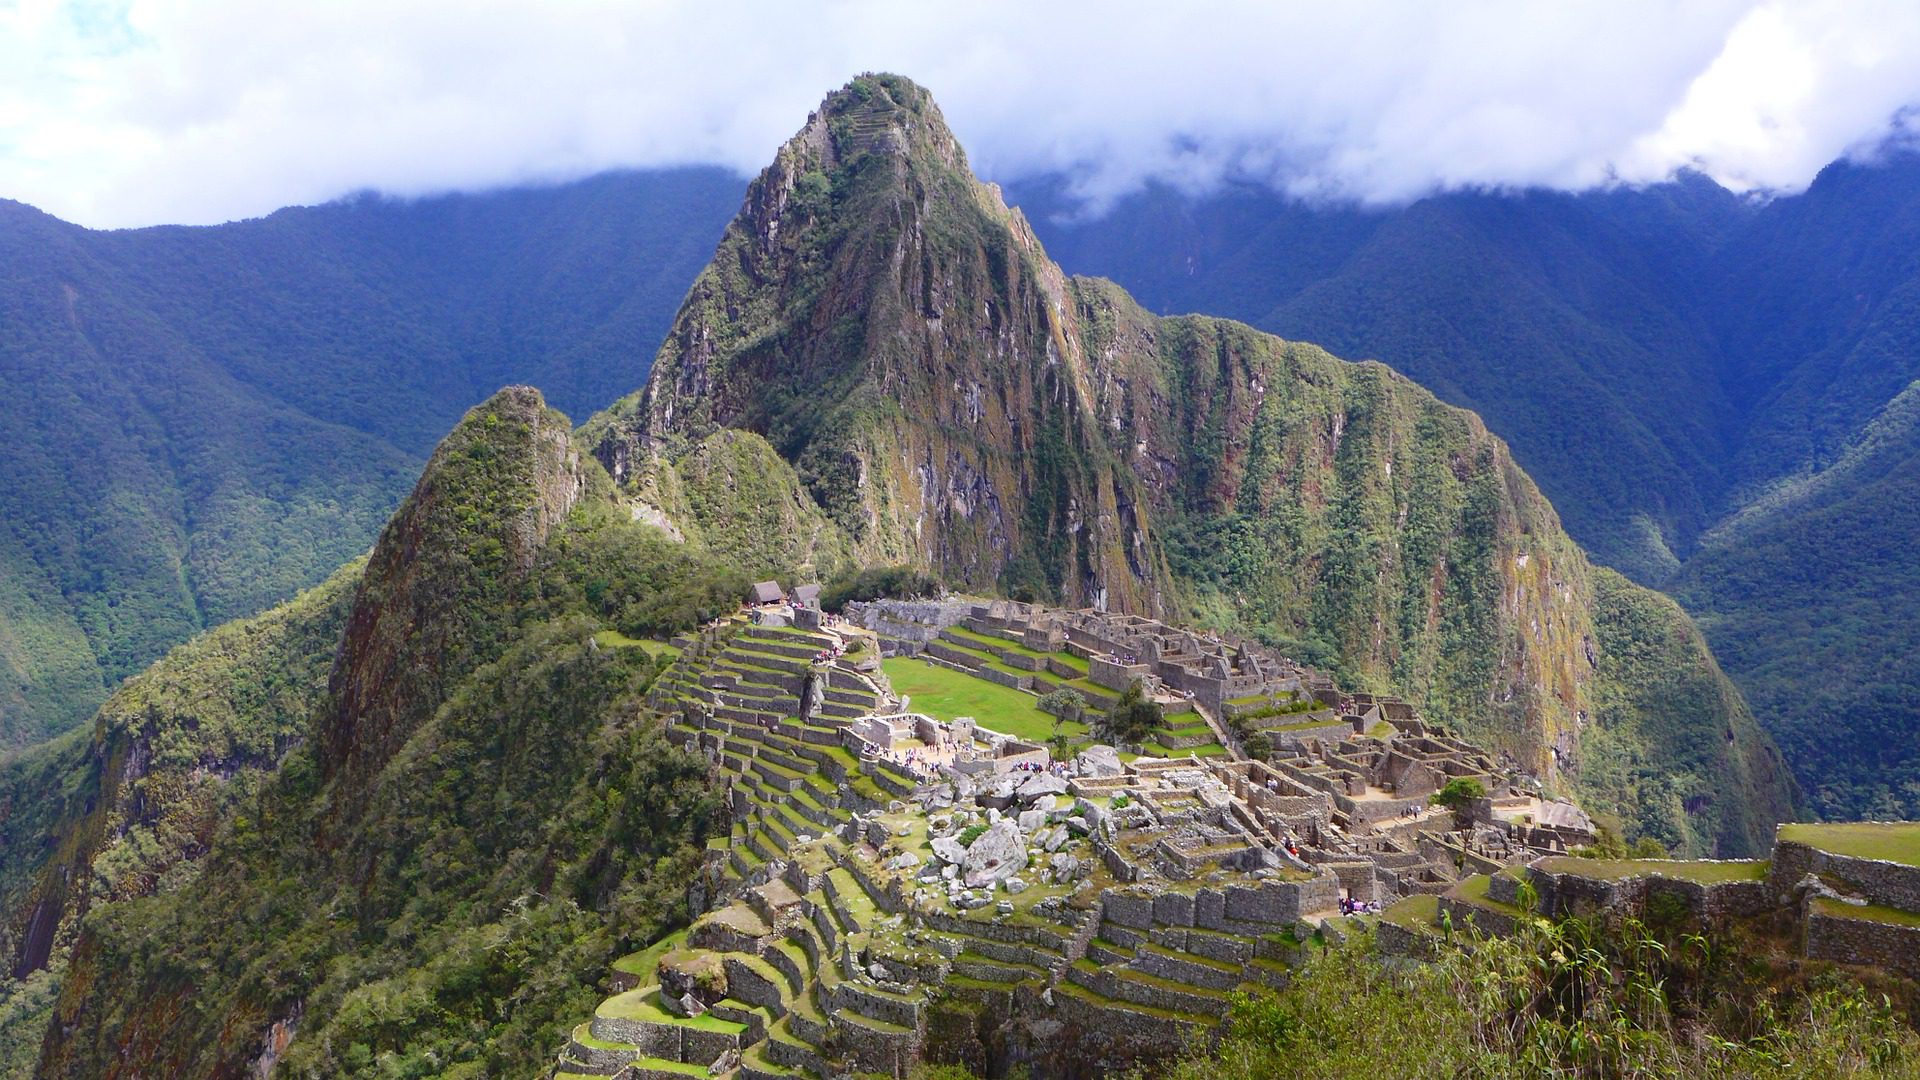 Machu Piccu in Peru, South America